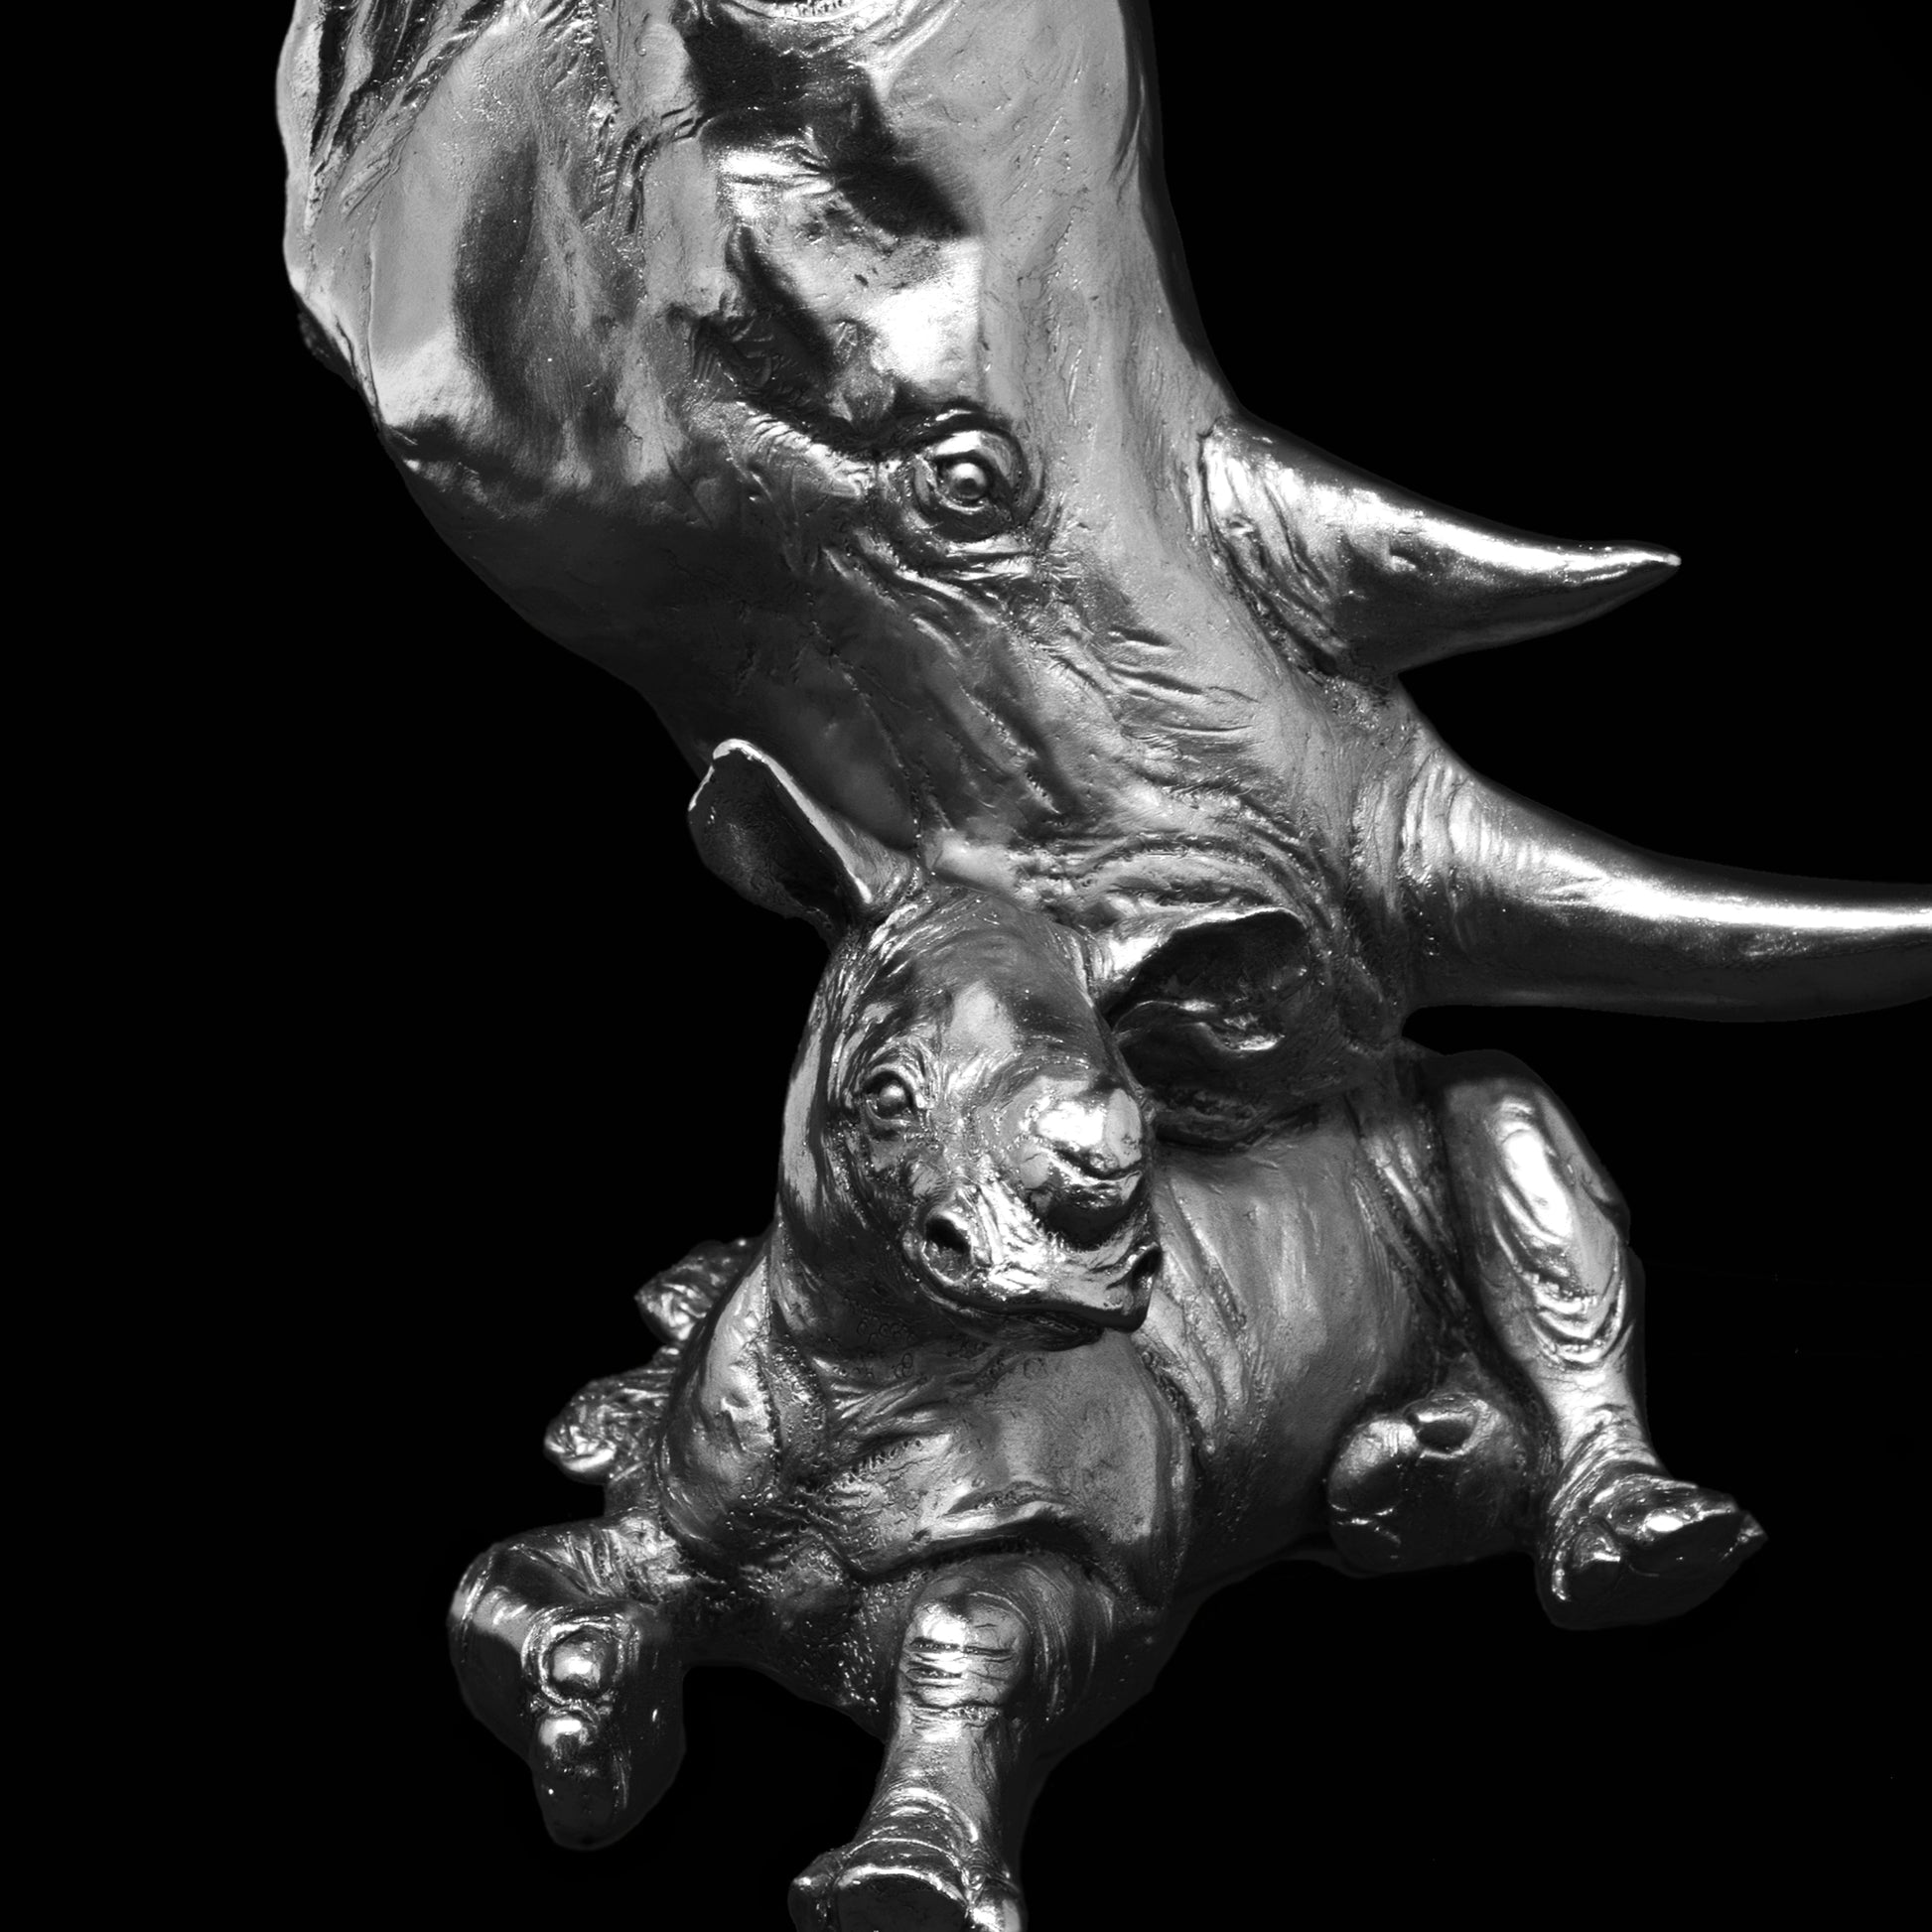 Rhino and Calf from Richard Cooper Studio